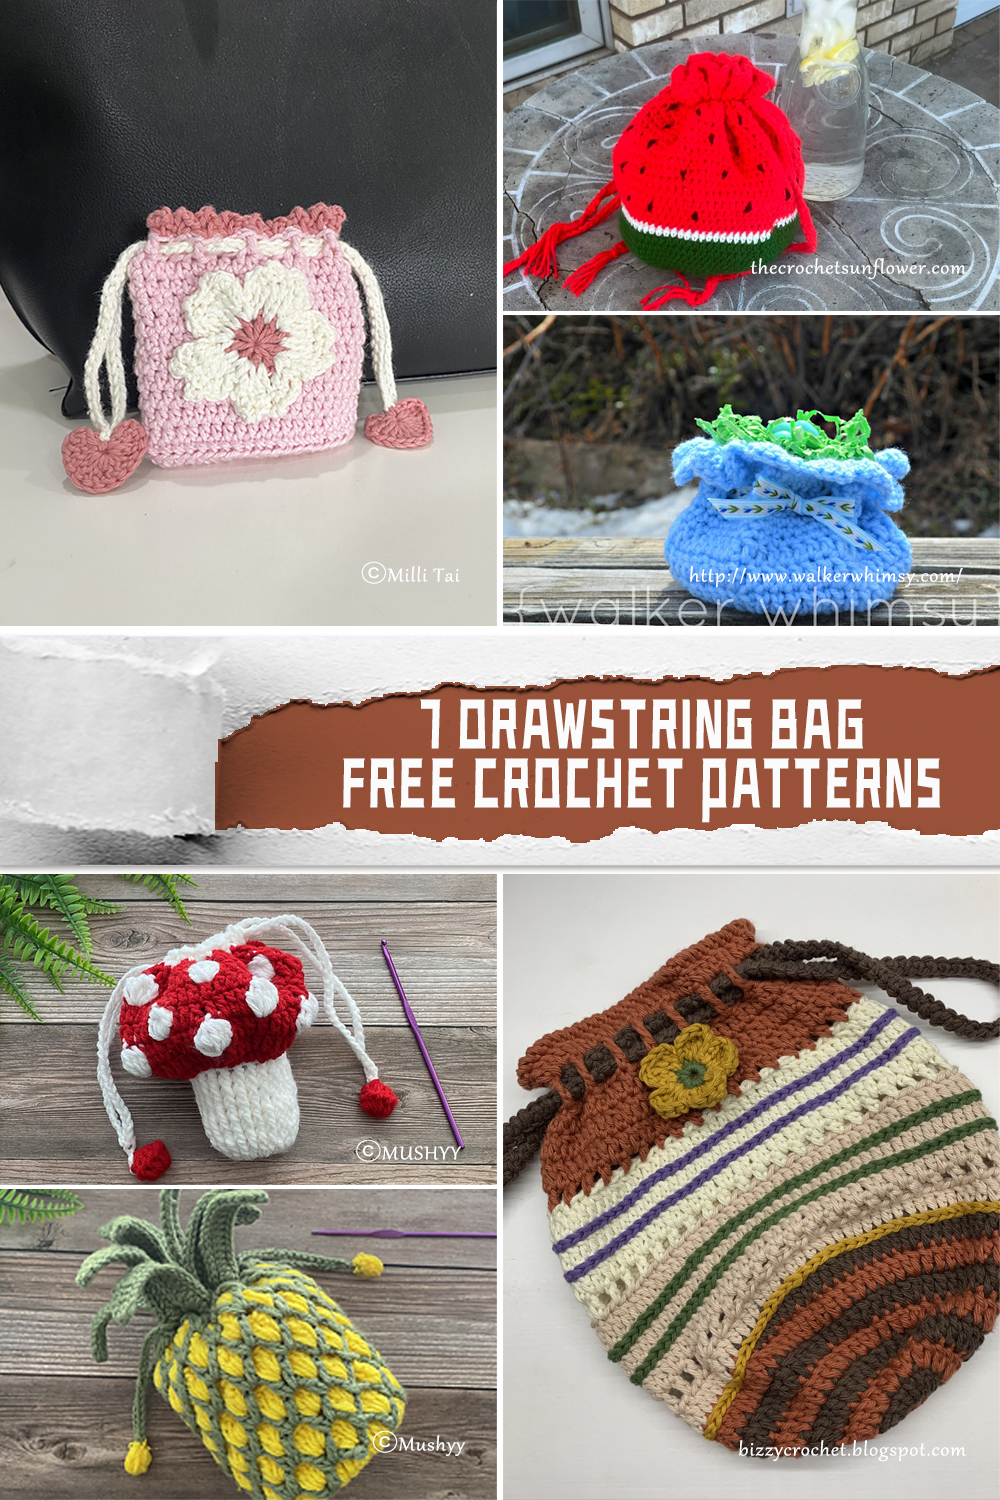 7 Drawstring Bag Crochet Patterns - FREE - iGOODideas.com